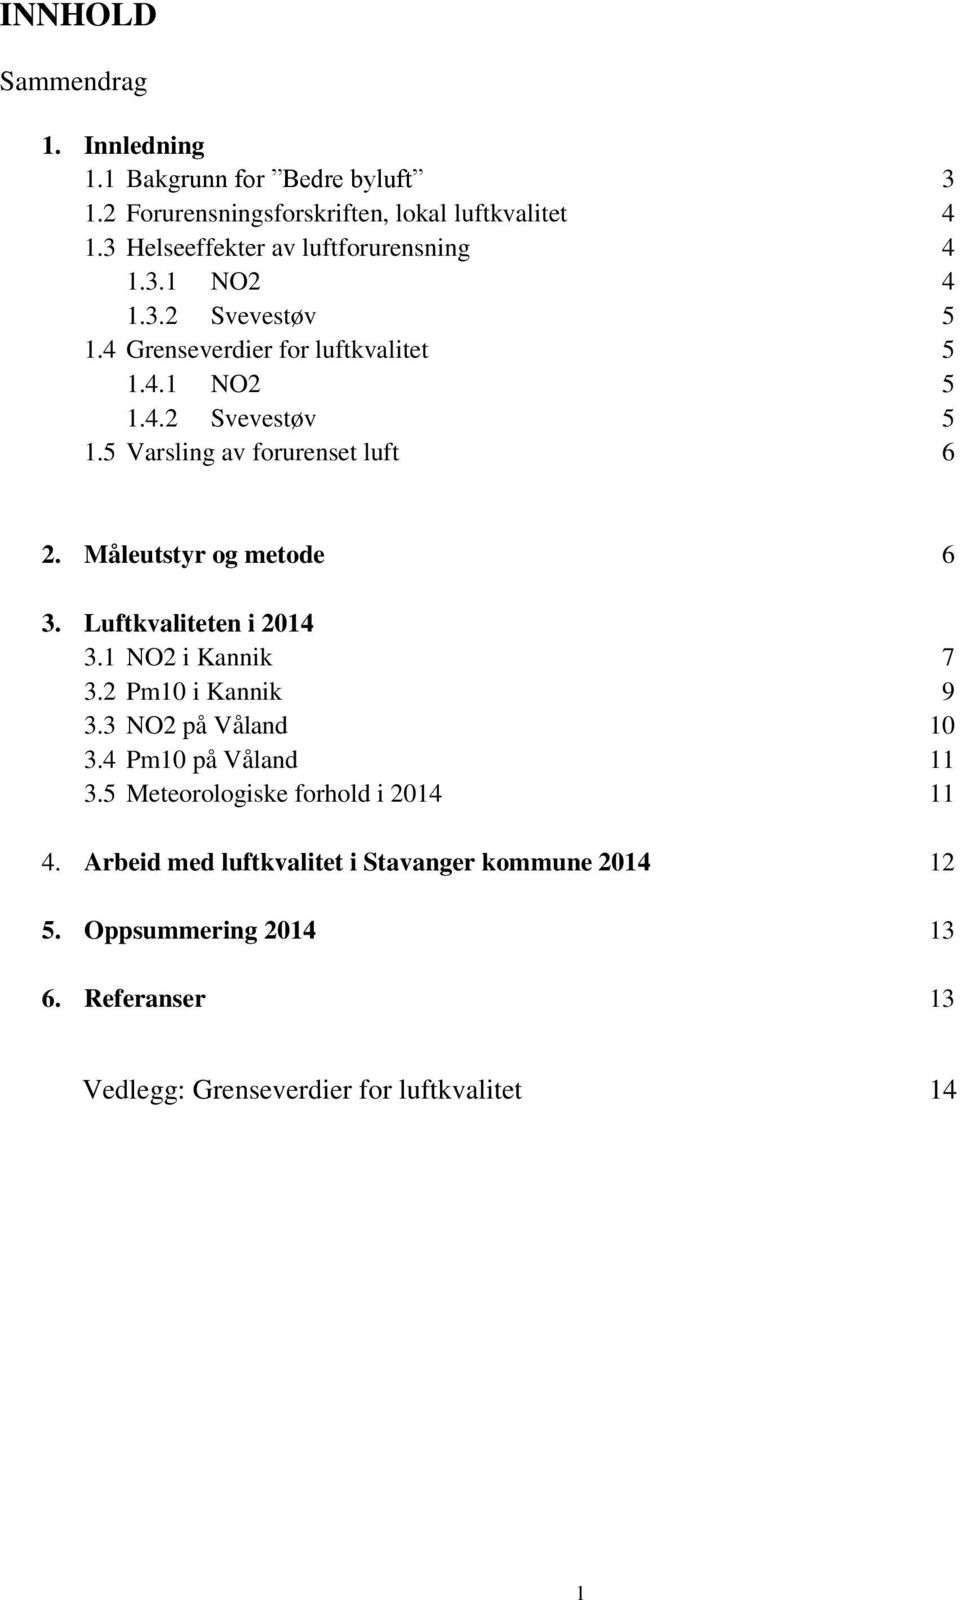 Måleutstyr og metode 6 3. Luftkvaliteten i 2014 3.1 NO2 i Kannik 7 3.2 Pm10 i Kannik 9 3.3 NO2 på Våland 10 3.4 Pm10 på Våland 11 3.